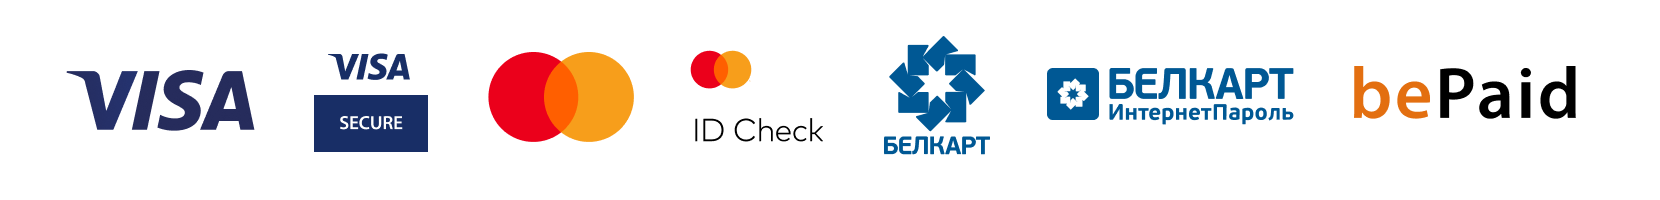 логотипы для футера цветные на прозрачном фоне (622).png